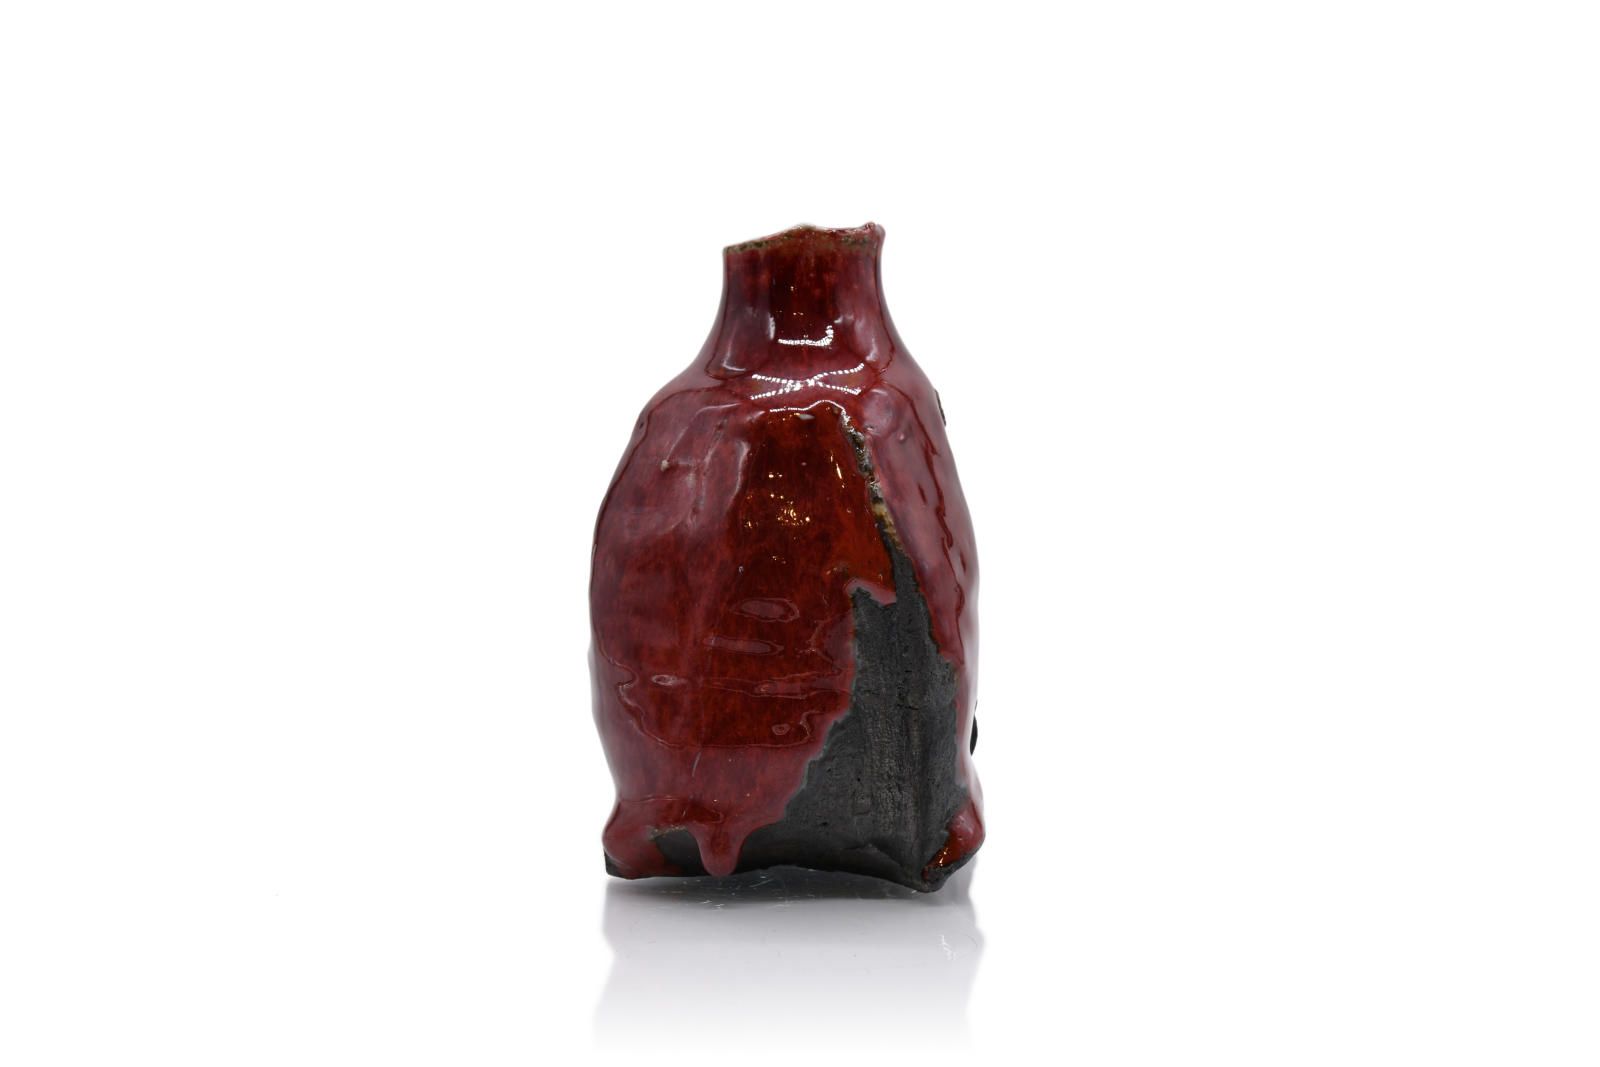 Copper Red Sake bottle by Margaret Curtis